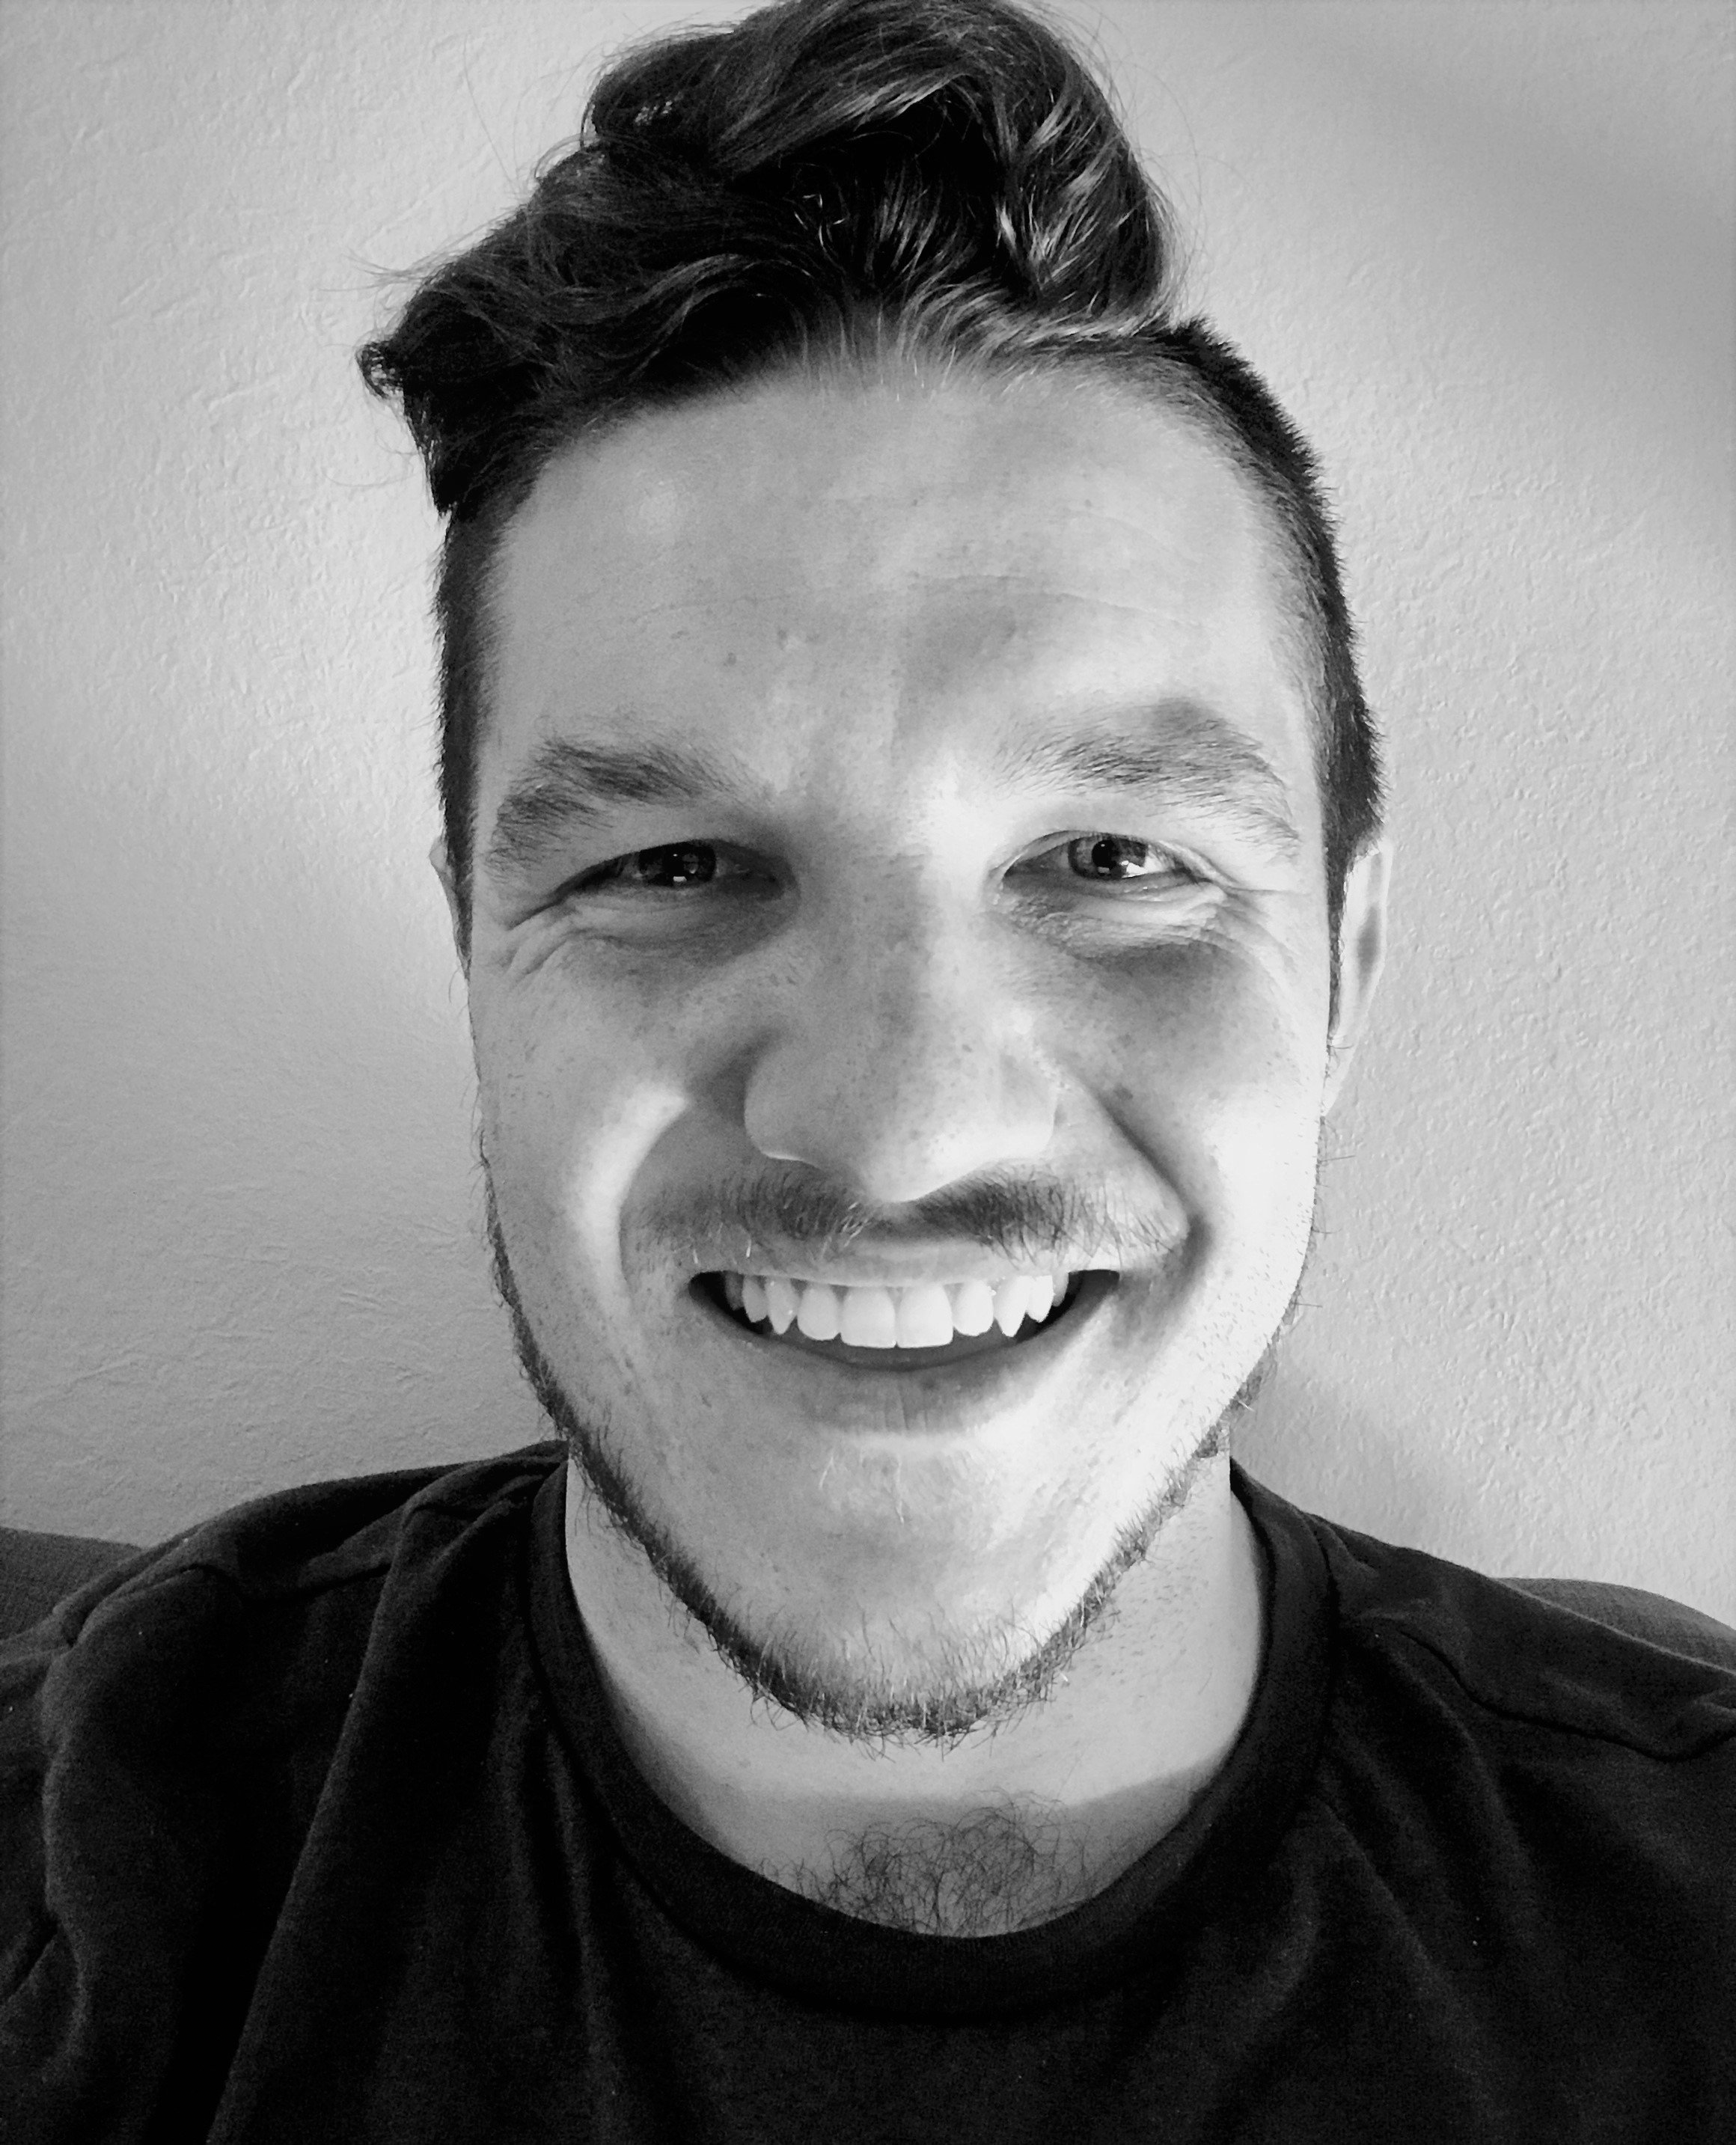 Father | JavaScript Developer | Lifelong student of technology https://t.co/SrHnhAXqEf https://t.co/sDAP5HWZ3h